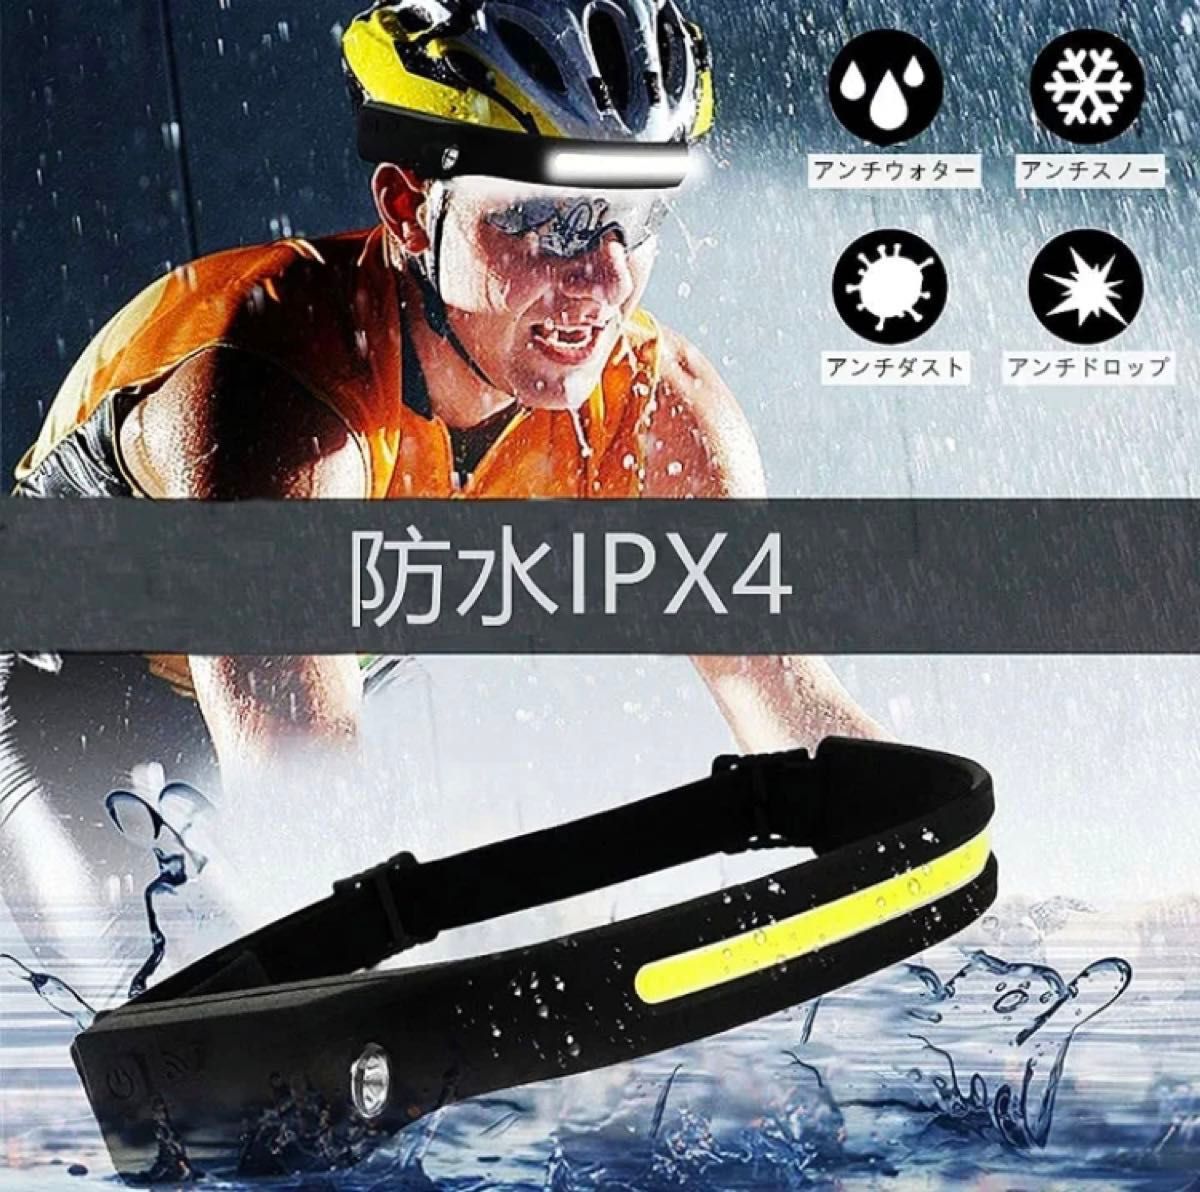 ヘッドライト LED充電式 USB IPX4防水 高輝度 サイズ調節可能 軽量 釣り登山 2個セット